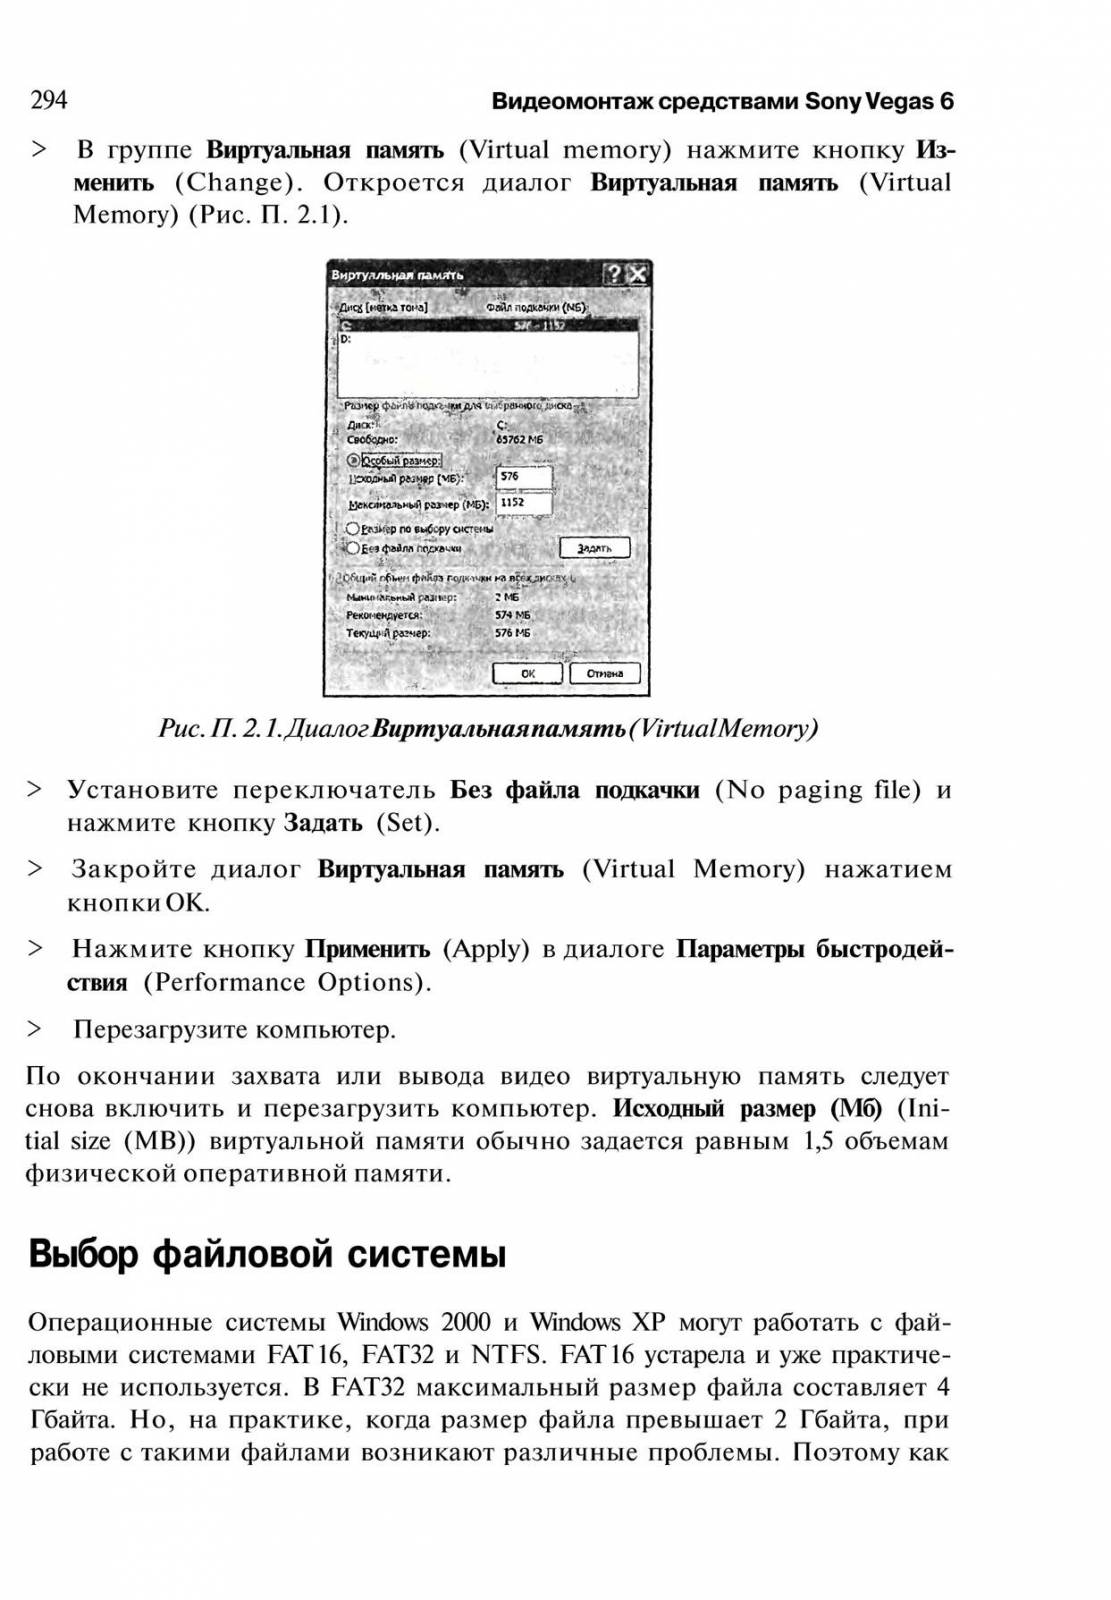 http://redaktori-uroki.3dn.ru/_ph/14/823946851.jpg